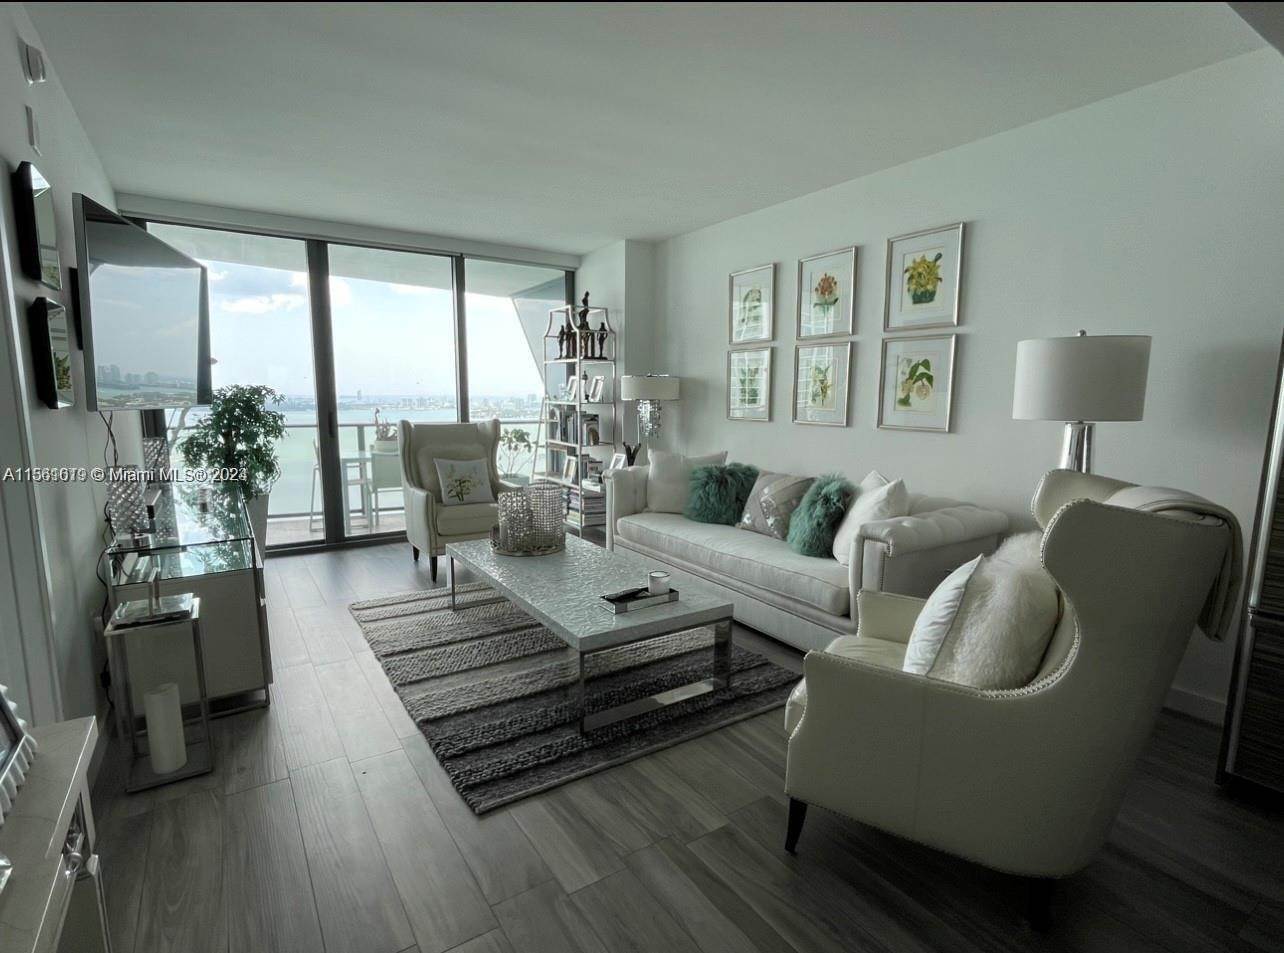 Condominiums at Edgewater, Miami, FL 33137